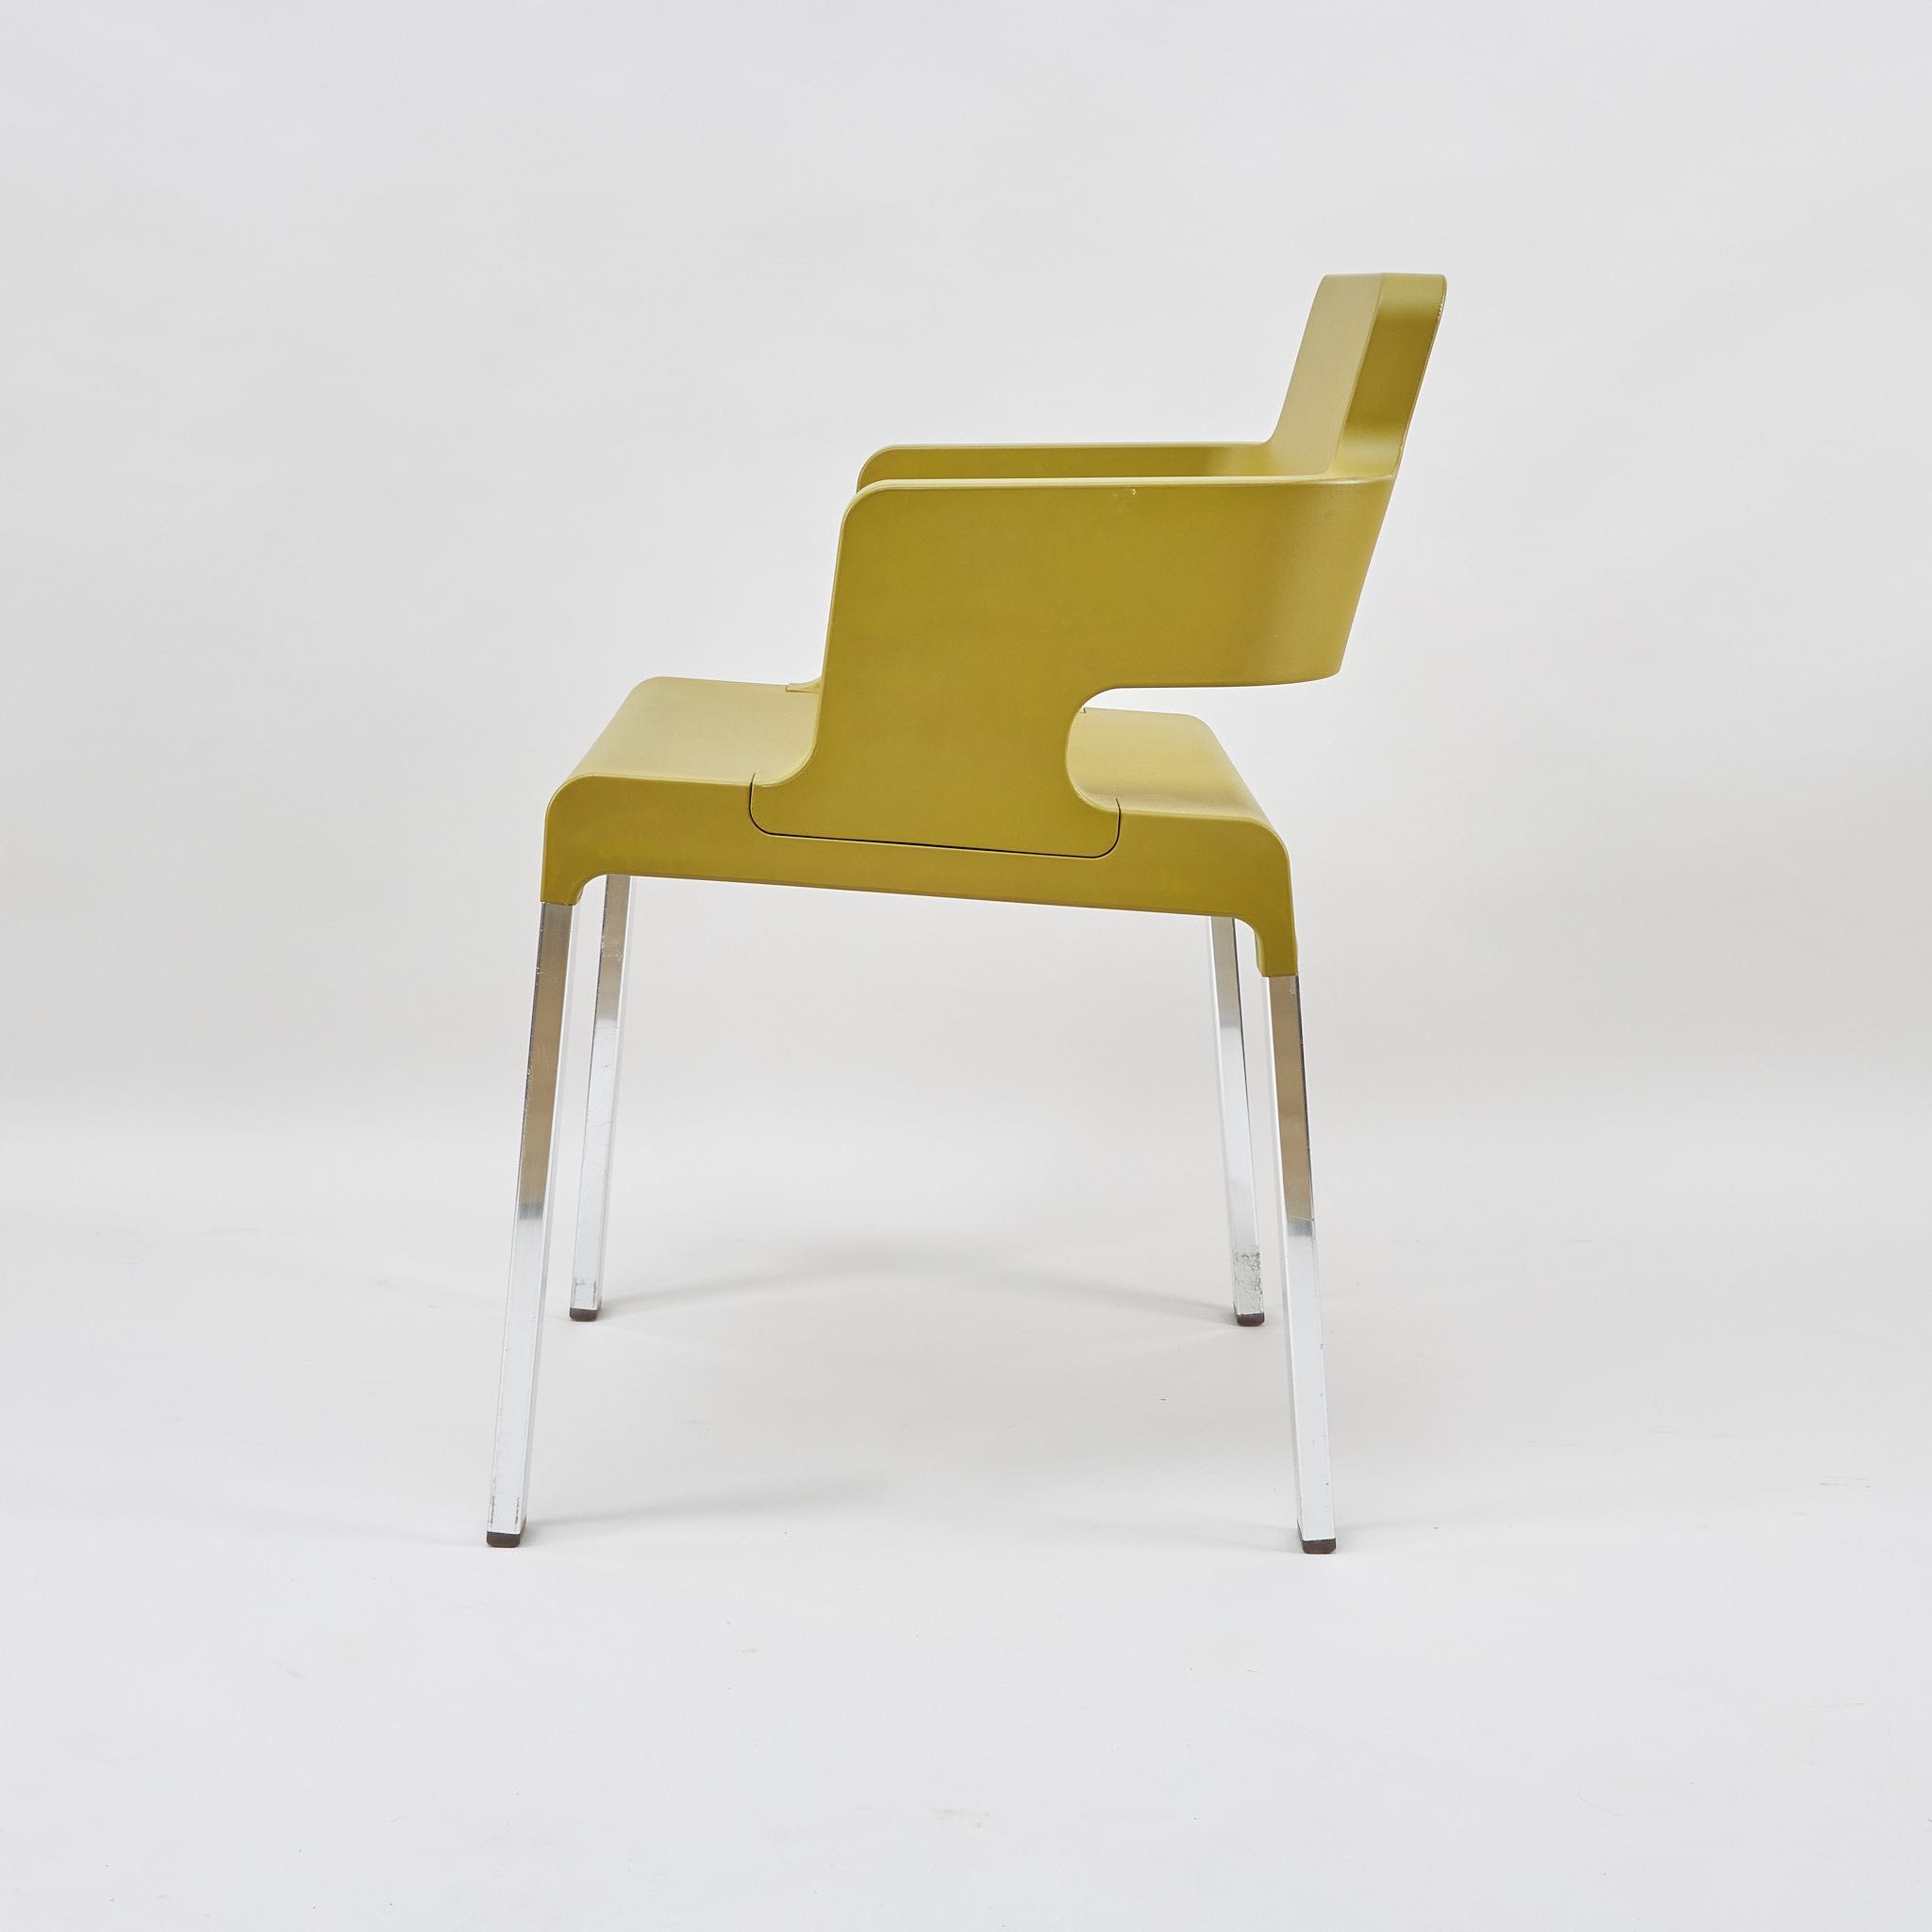 8 krzeseł/foteli Christophe Marchand for Ycami "Carré Soft" - Włochy